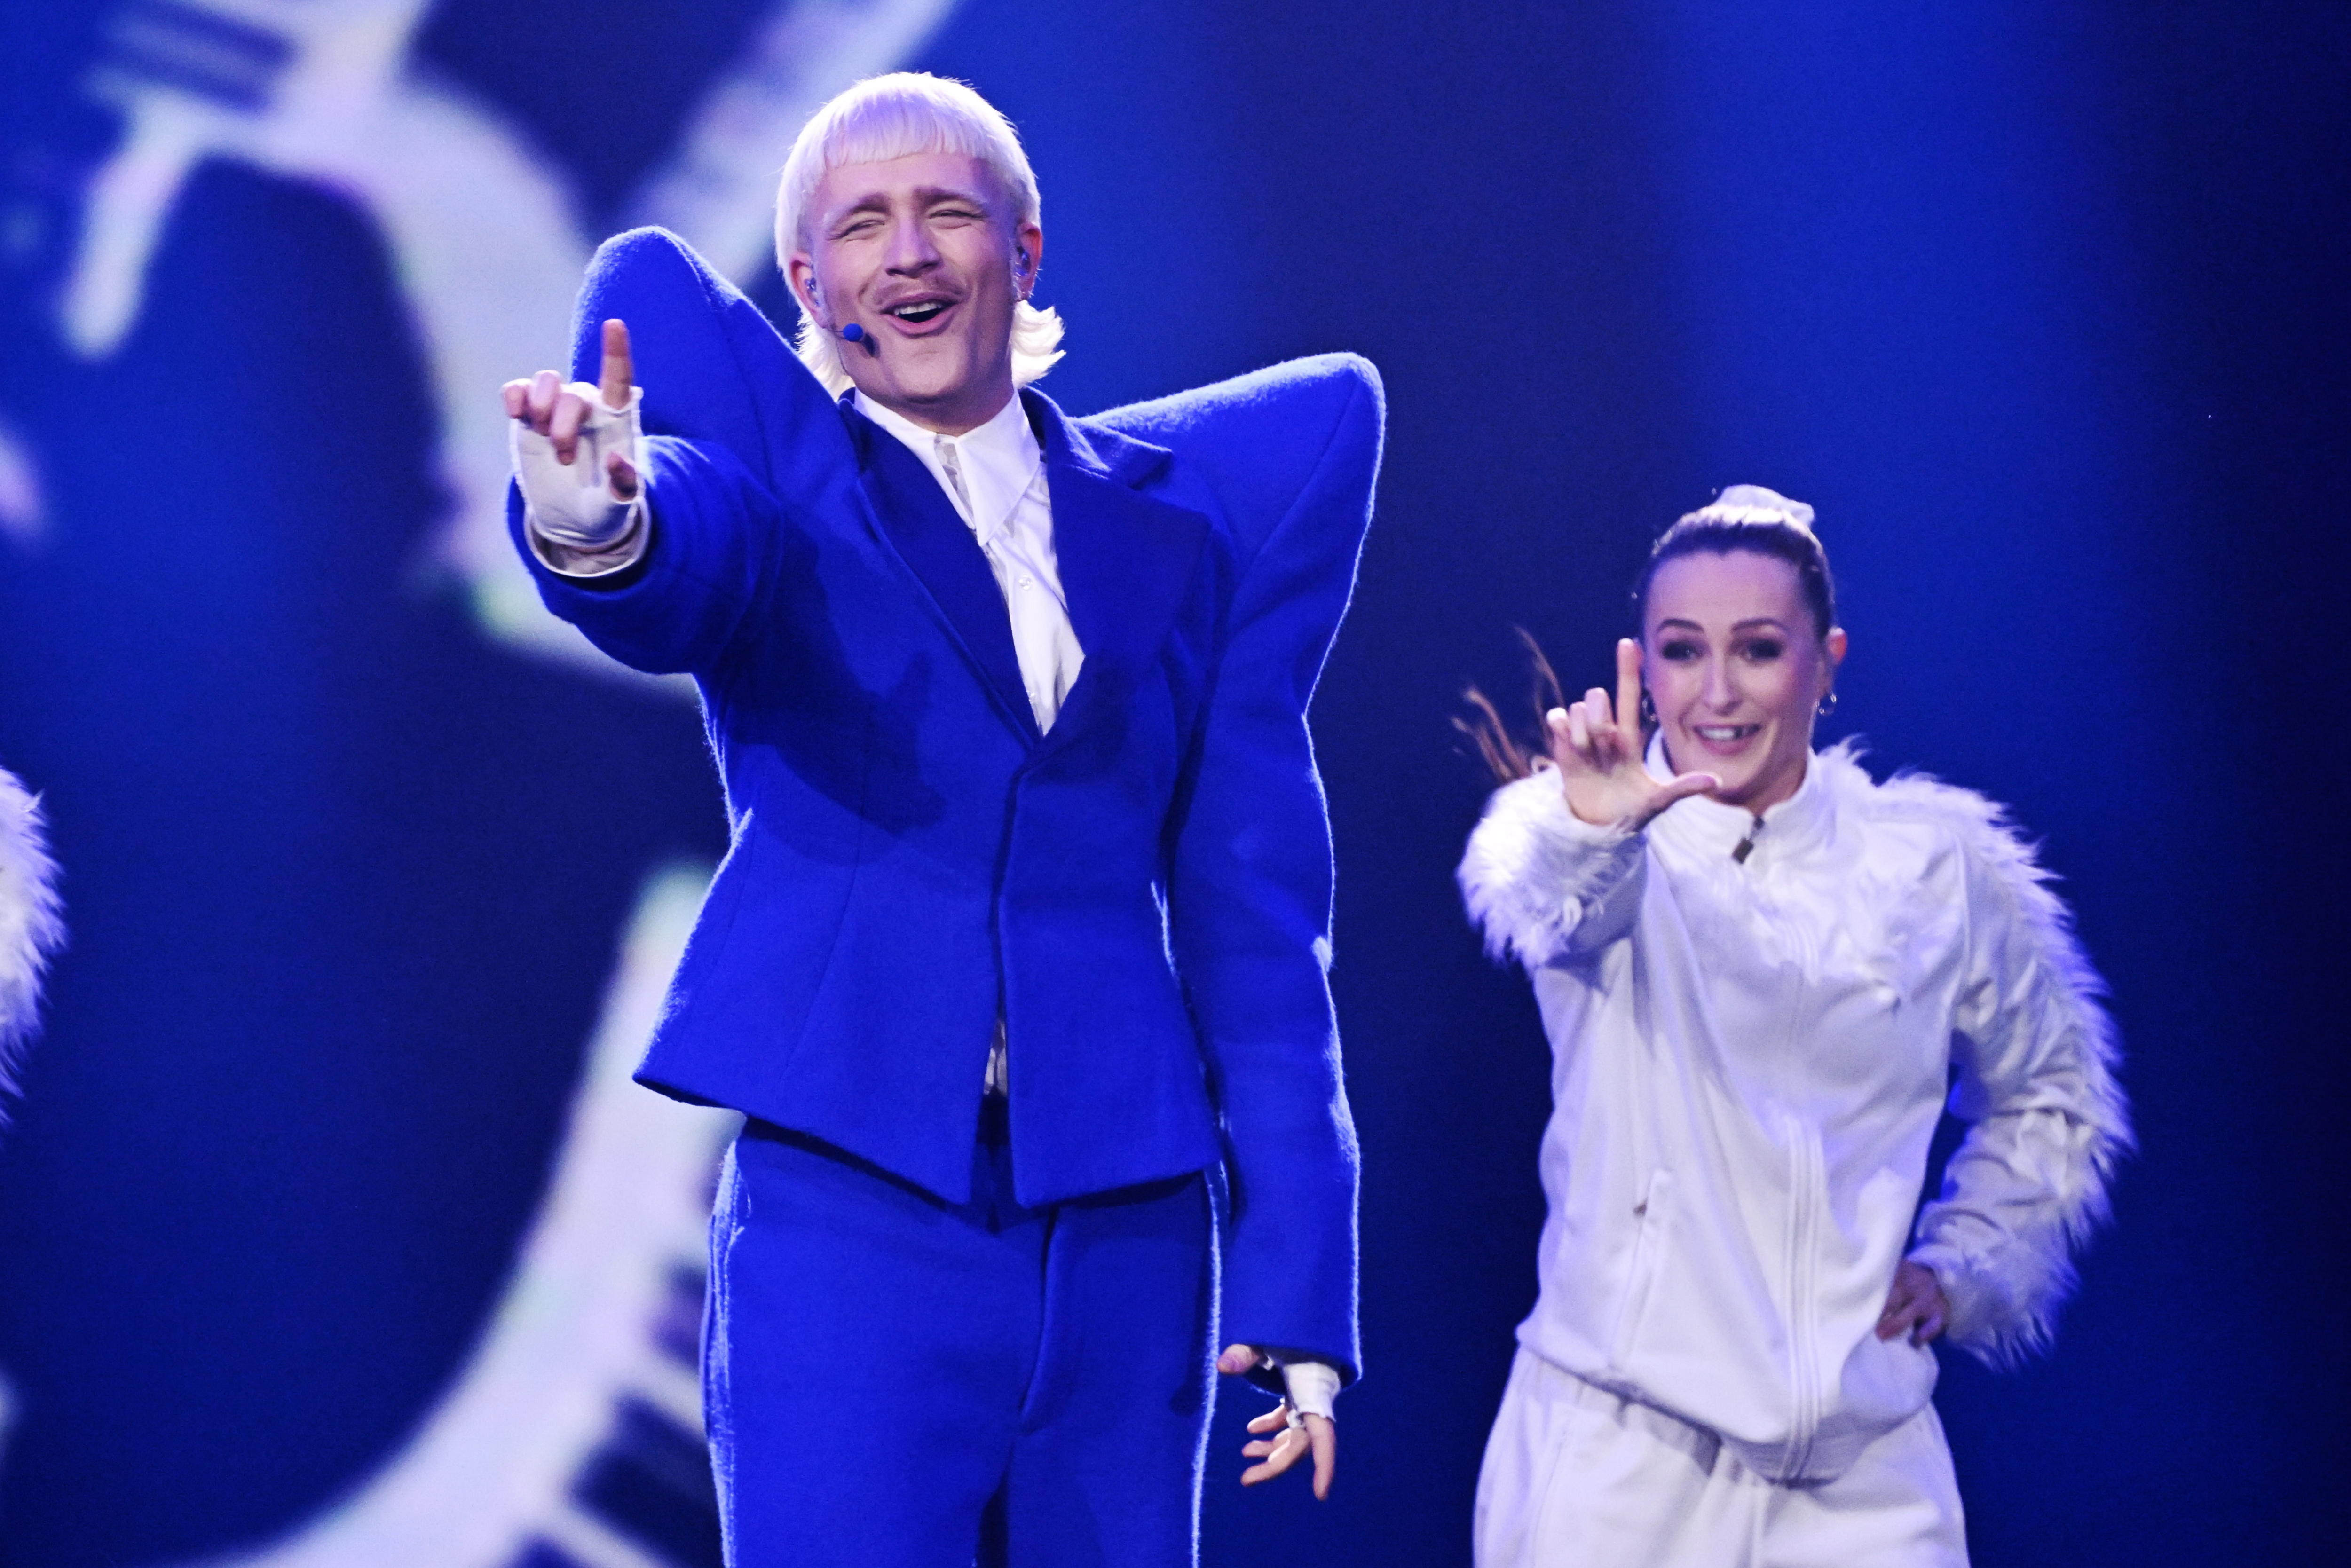 Eurovisión descalifica al representante de Países Bajos por “incidente” con miembro de producción